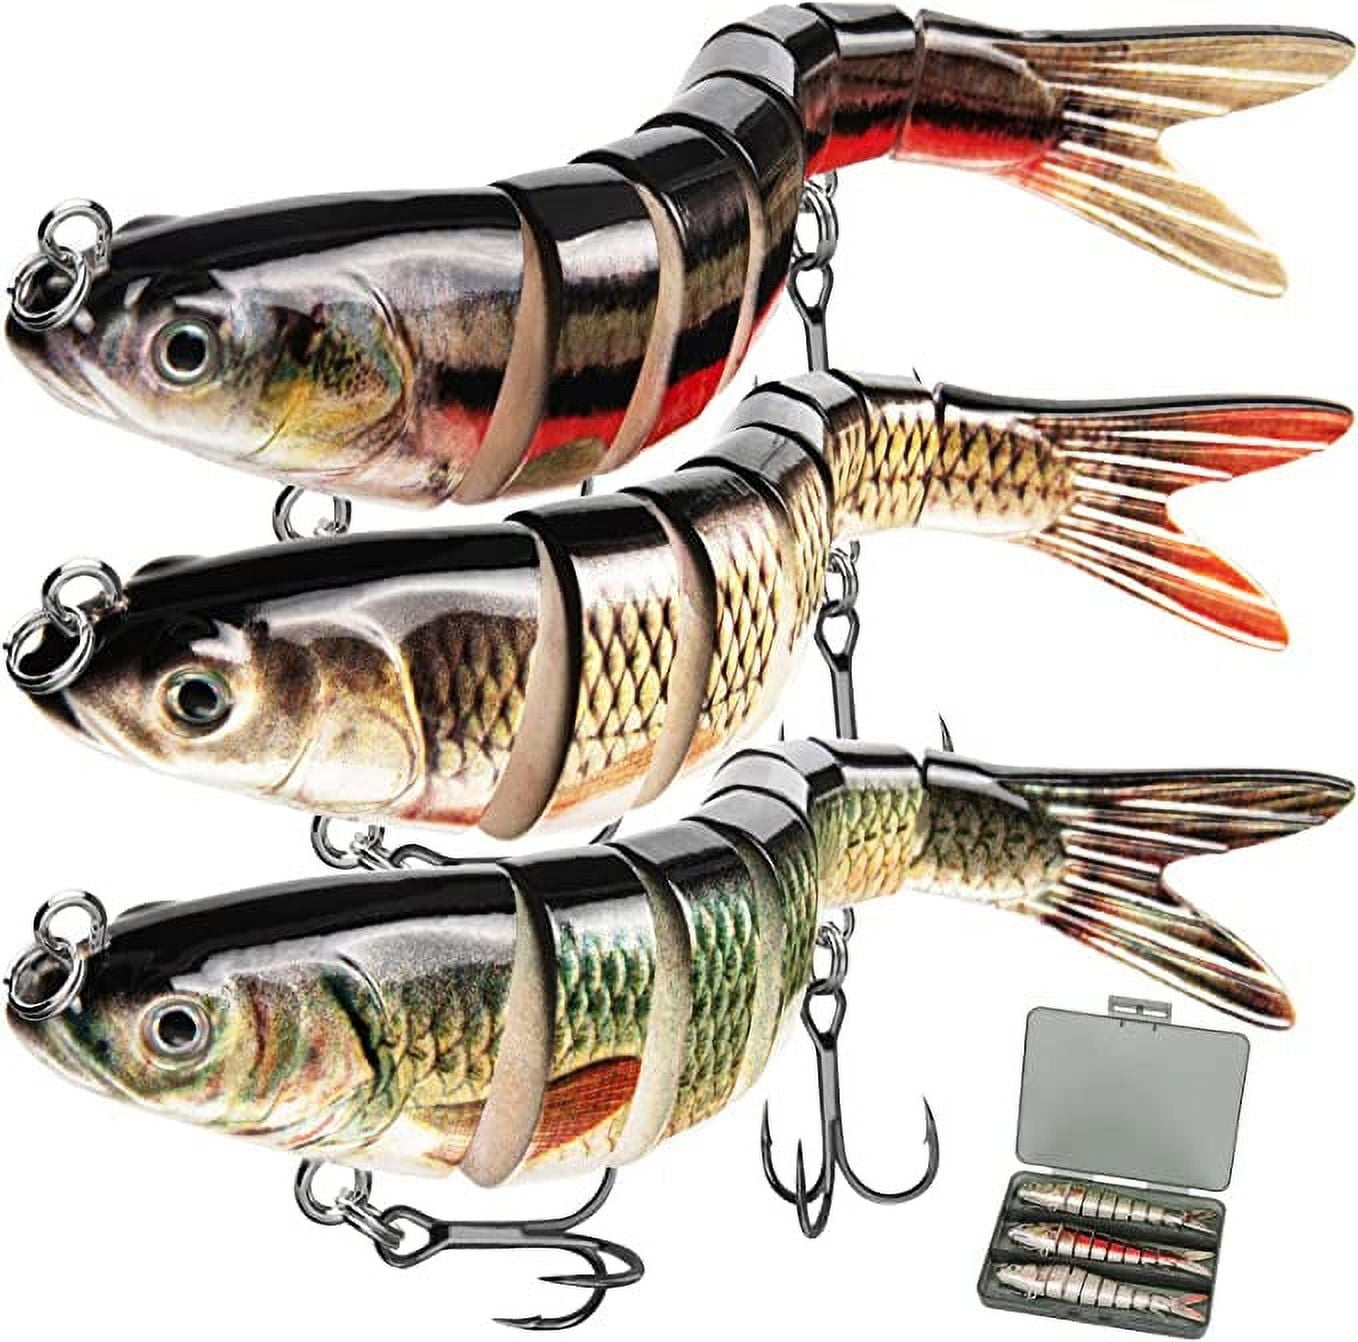  Kisangel 101 Pcs fishing lure kit freshwater lures